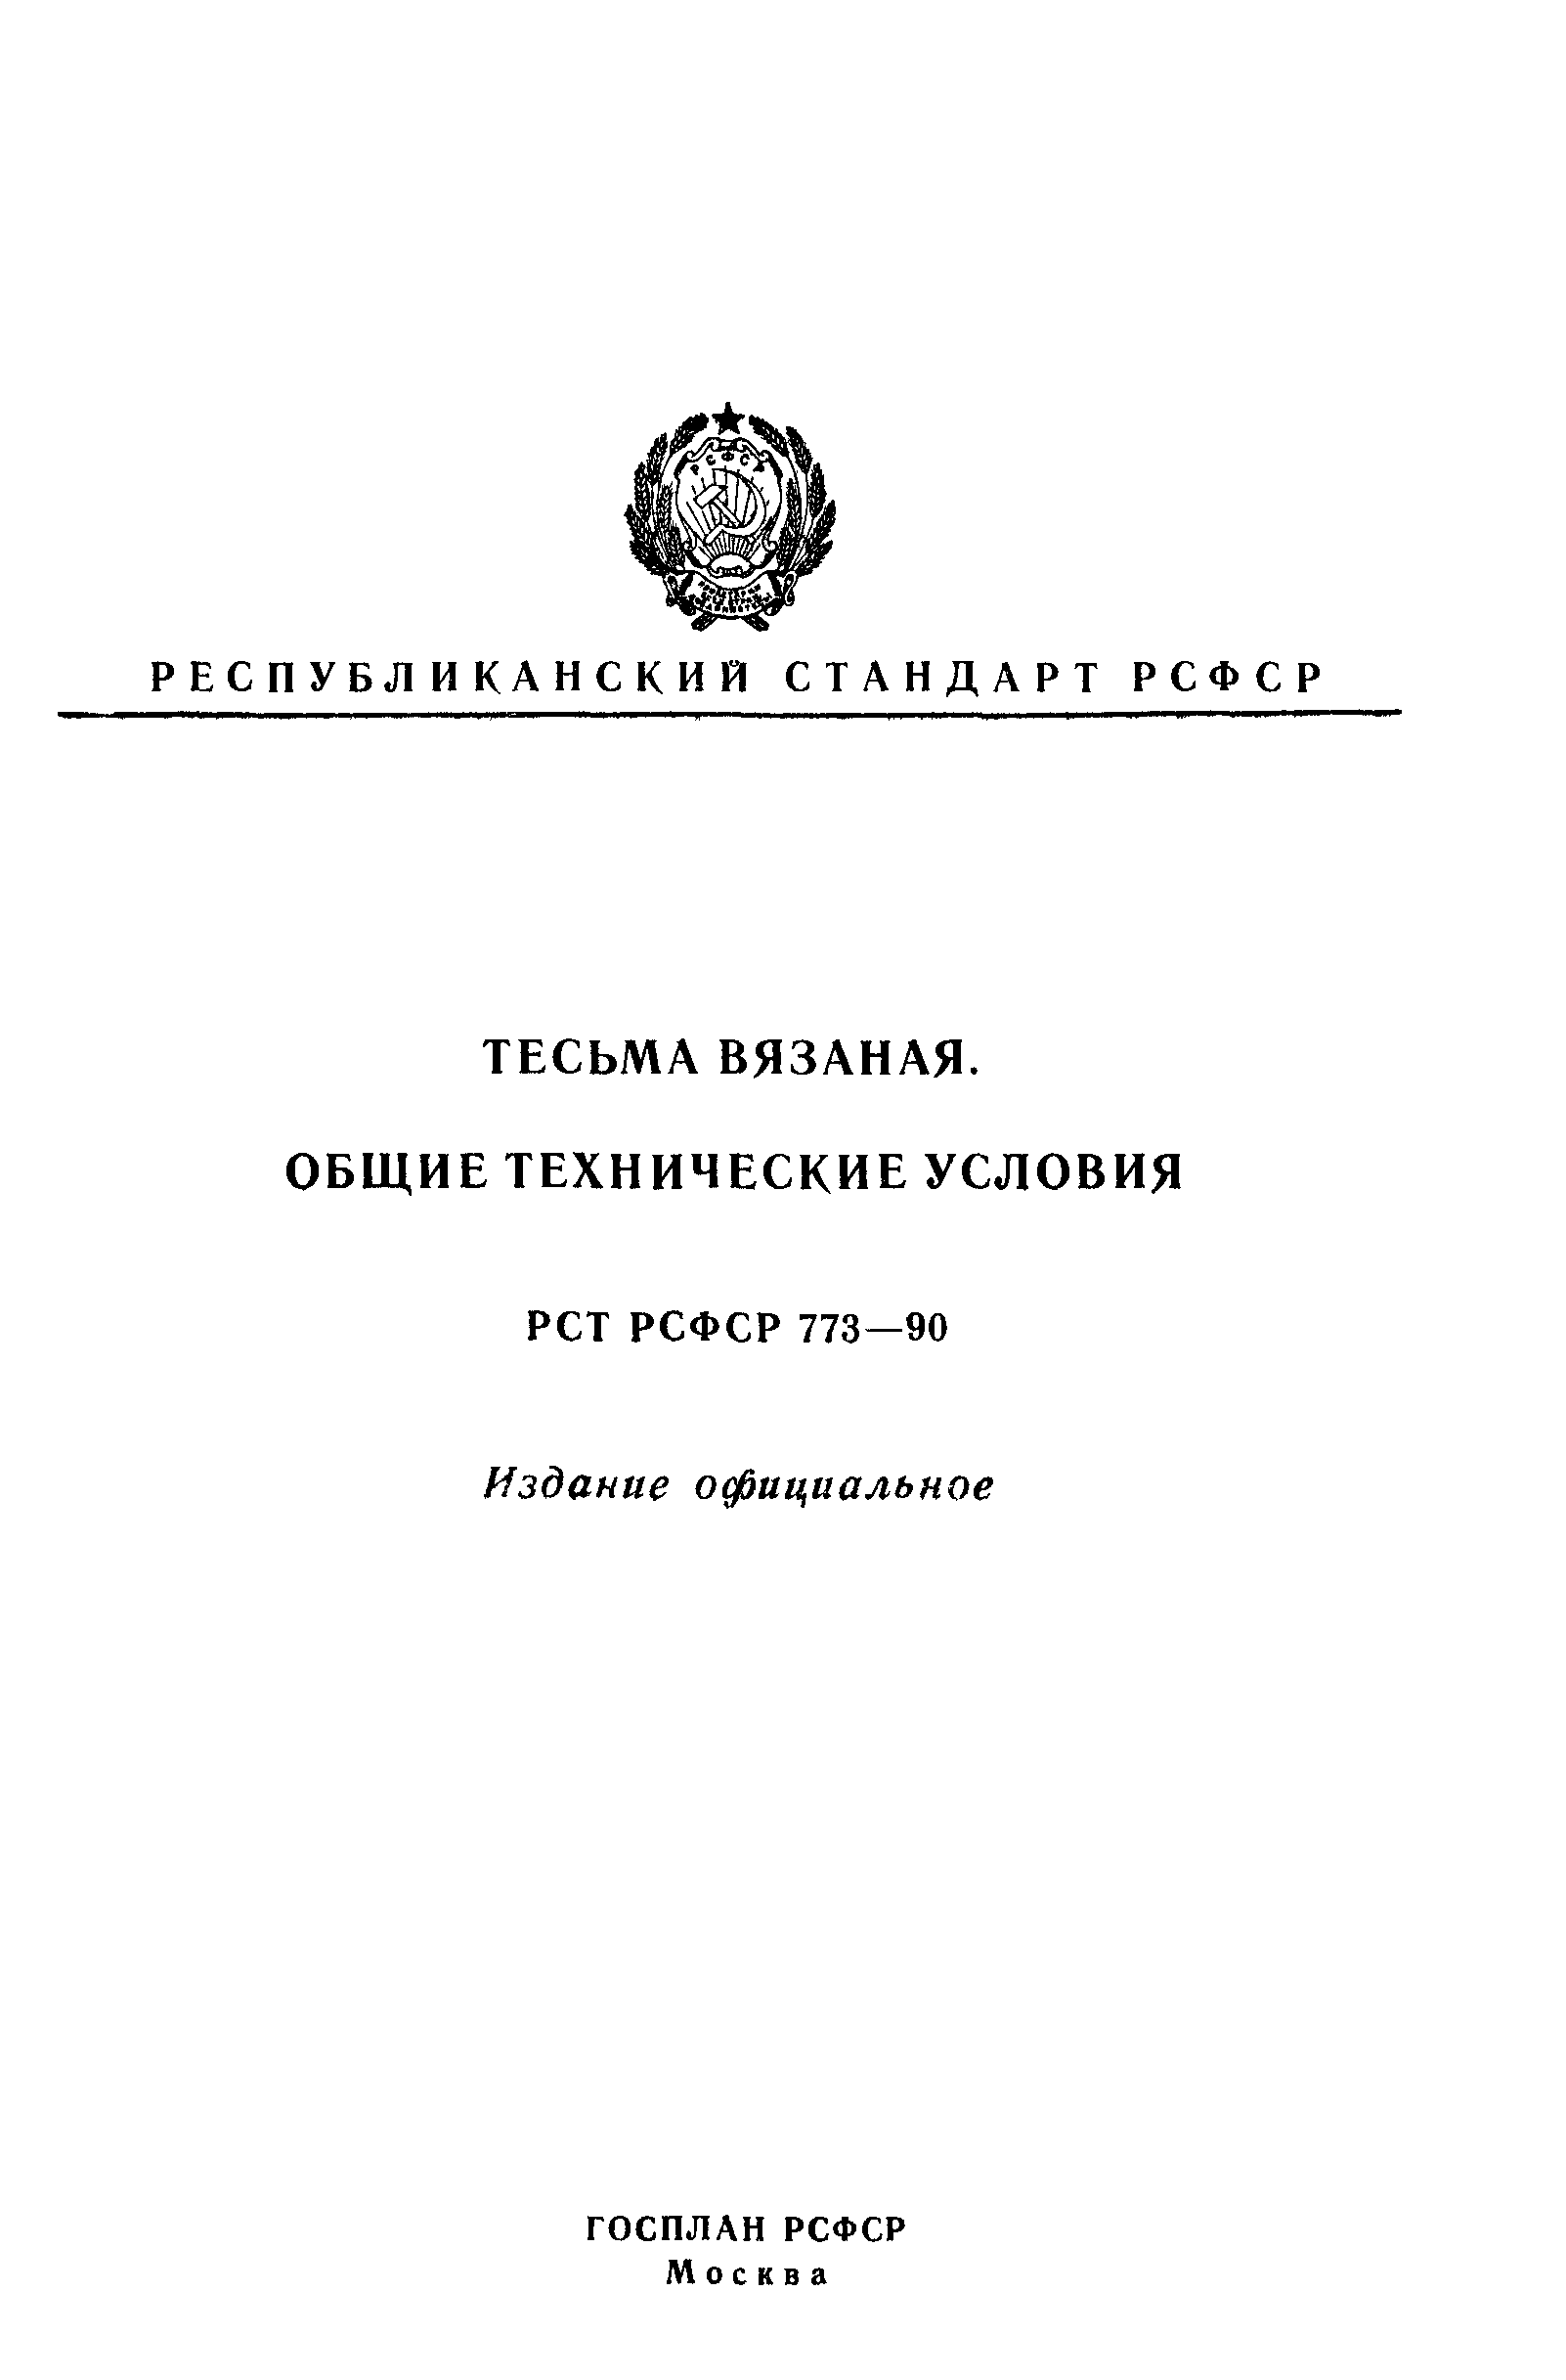 РСТ РСФСР 773-90